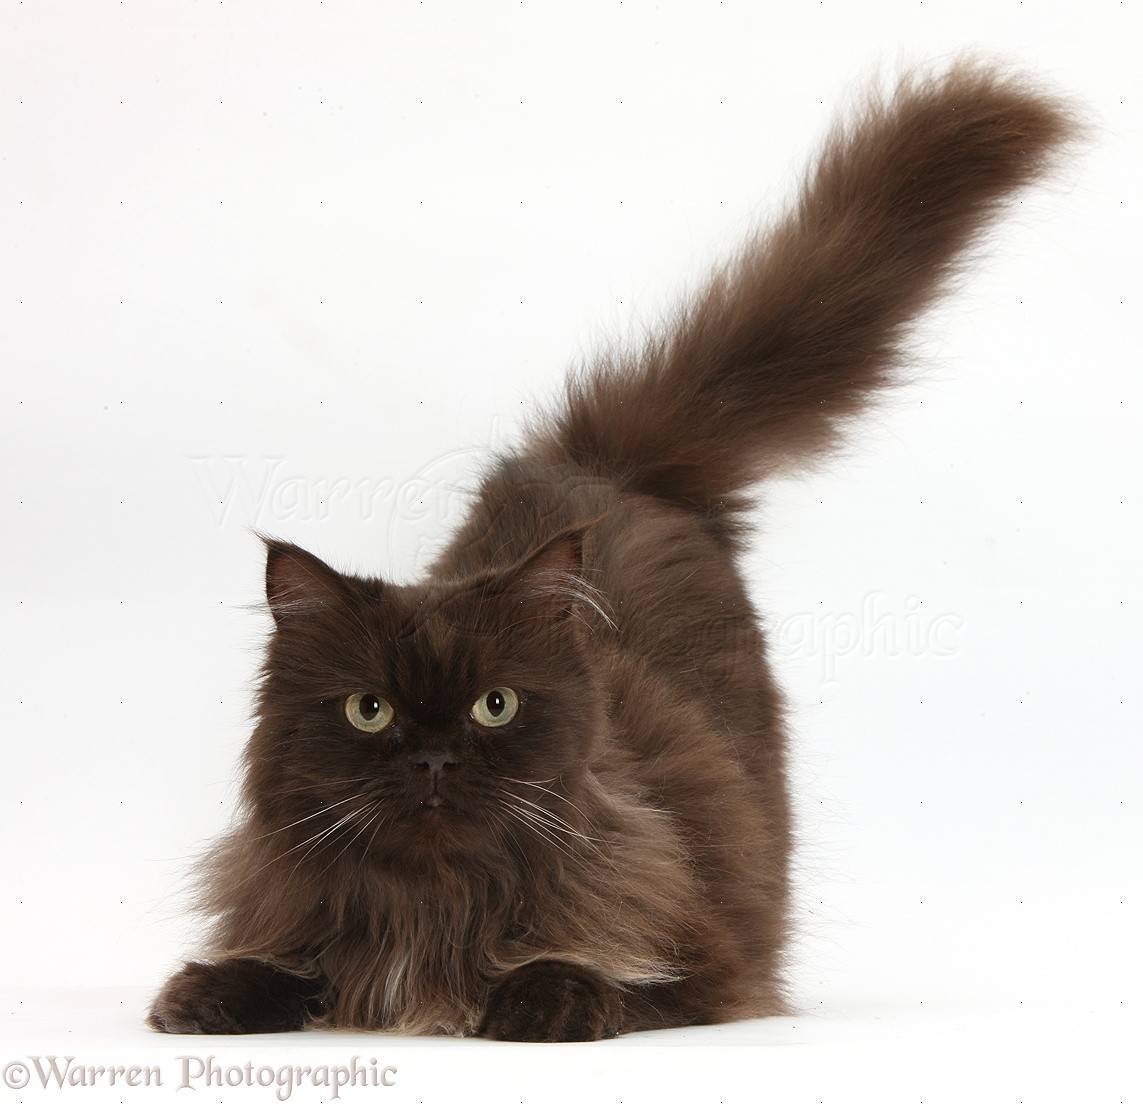 Кошка, которая похожа на белку благодаря роскошному хвосту, завораживает